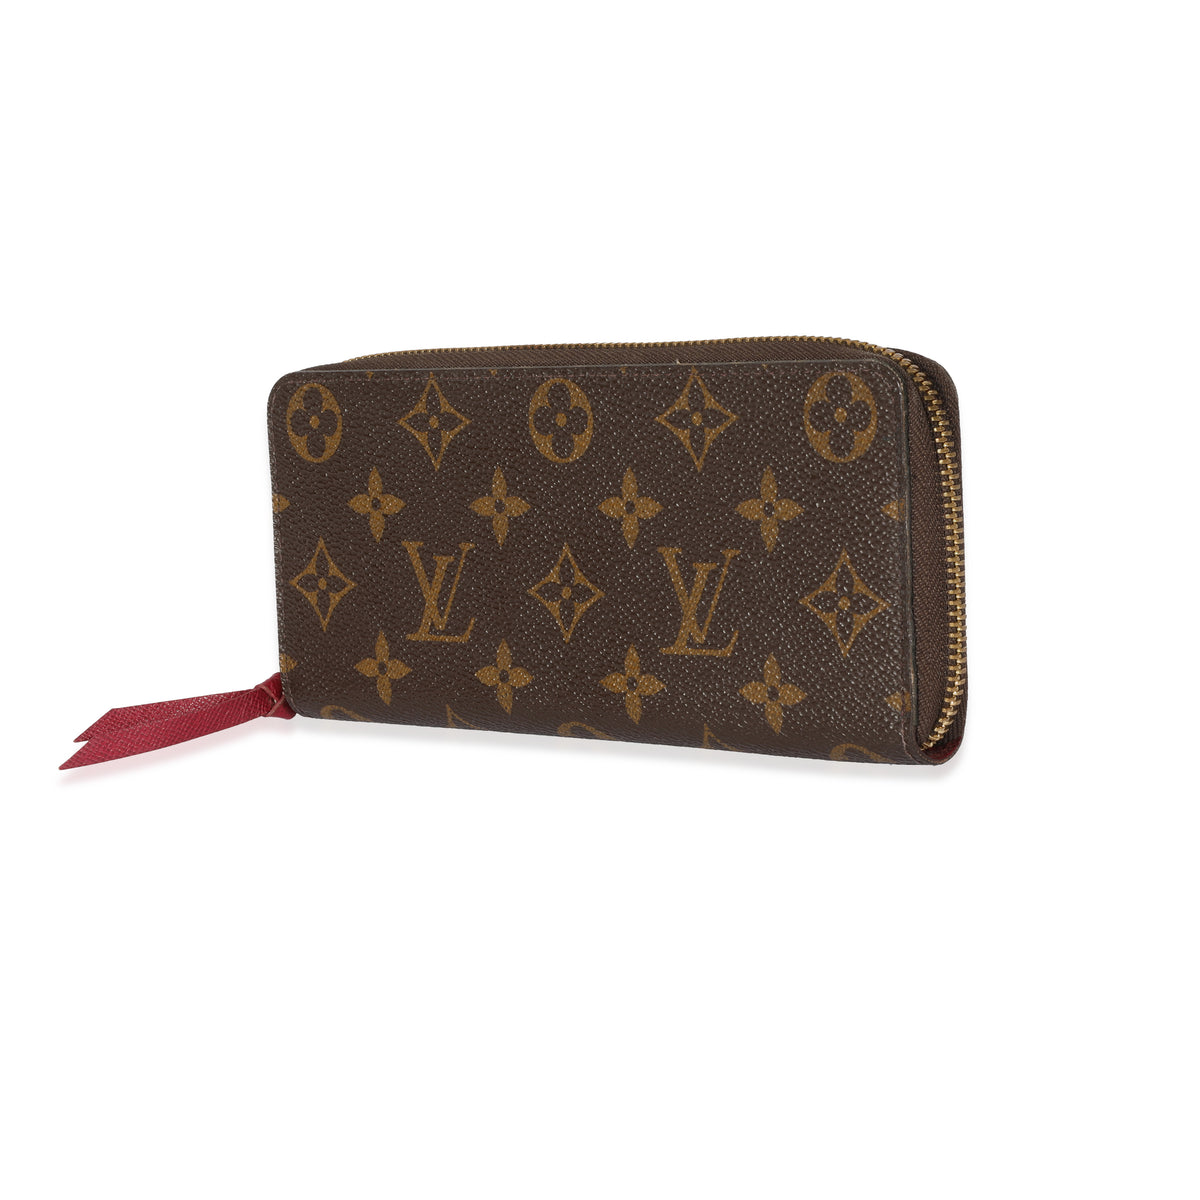 Louis Vuitton monogram Clemence wallet full set